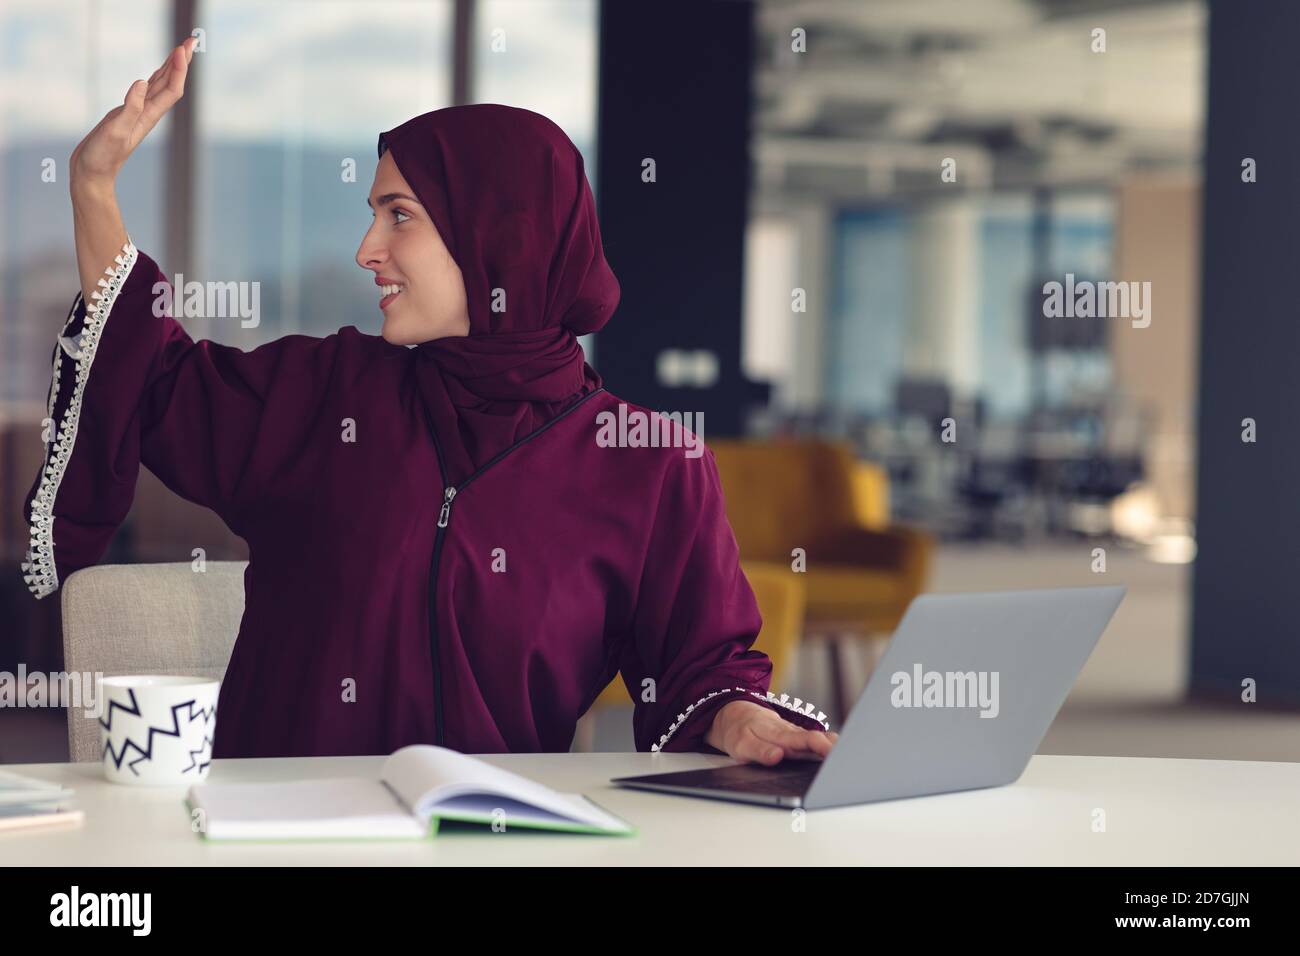 jeune femme d'affaires musulmane professionnelle utilisant un ordinateur portable de tablette numérique au travail Banque D'Images